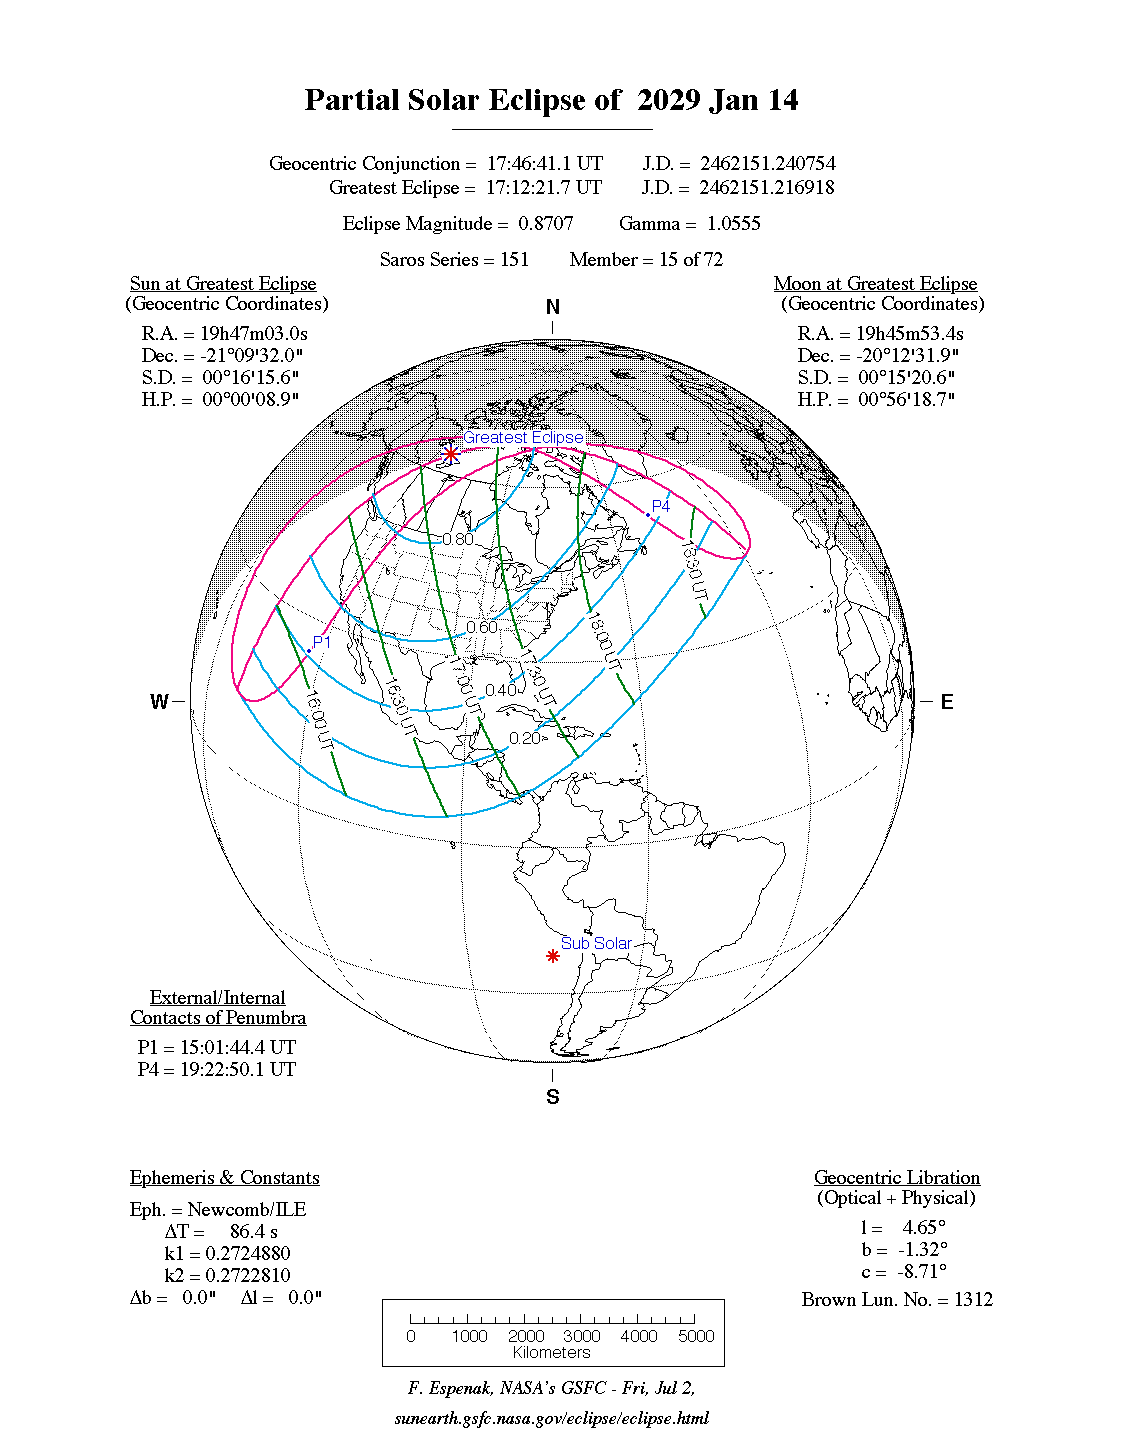 Verlauf der Partiellen Sonnenfinsternis am 14.01.2029